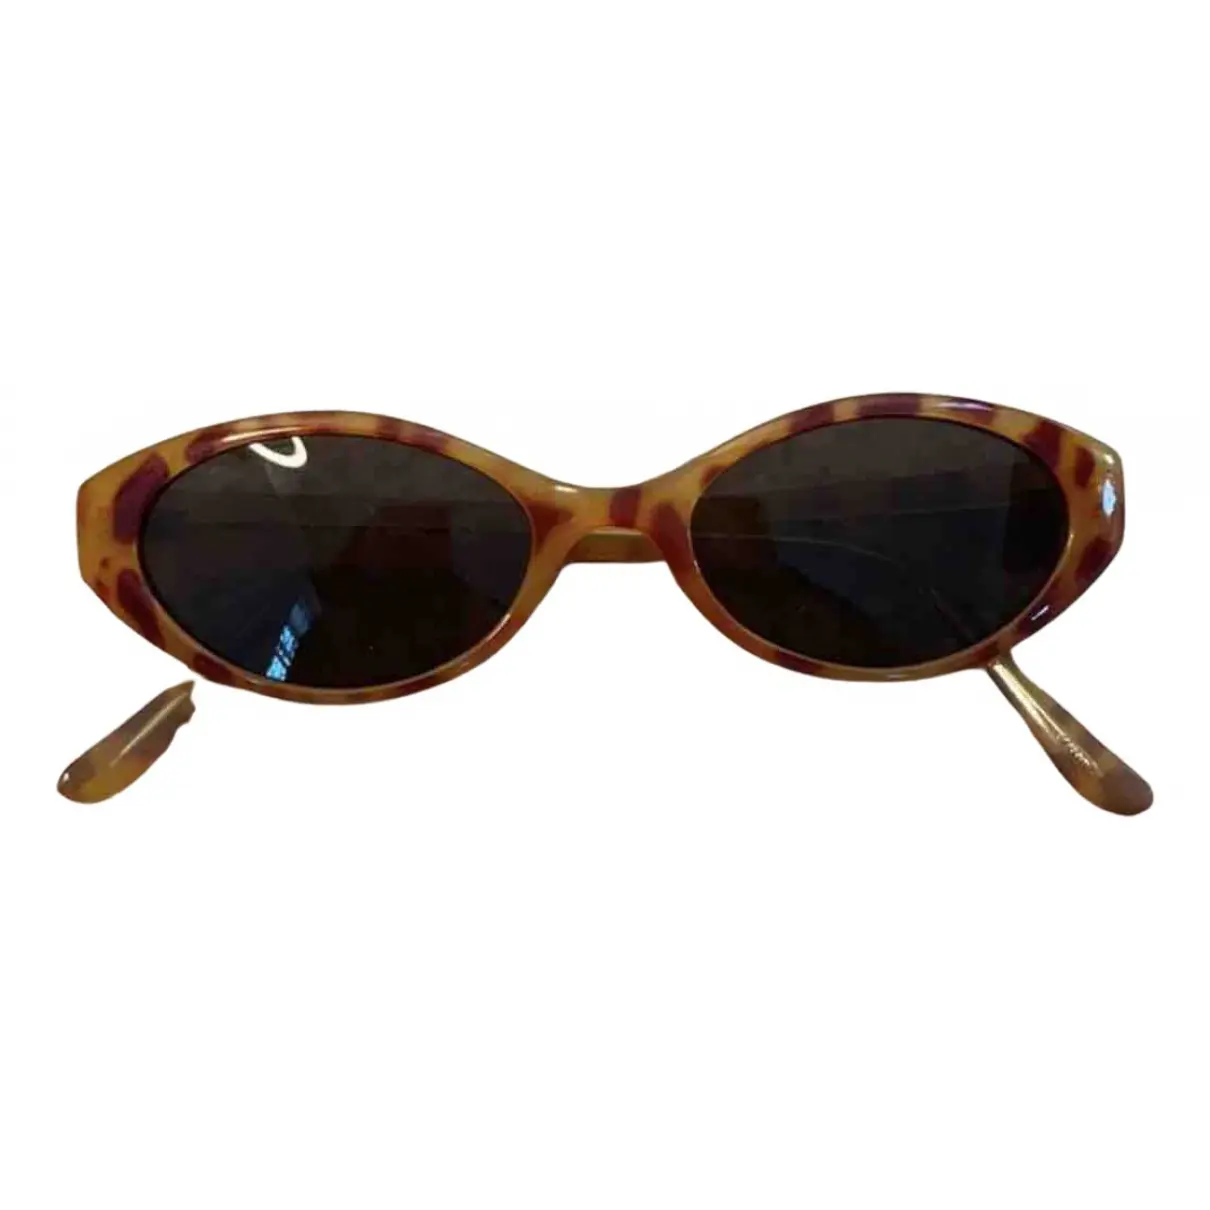 Buy Steve Madden Sunglasses online